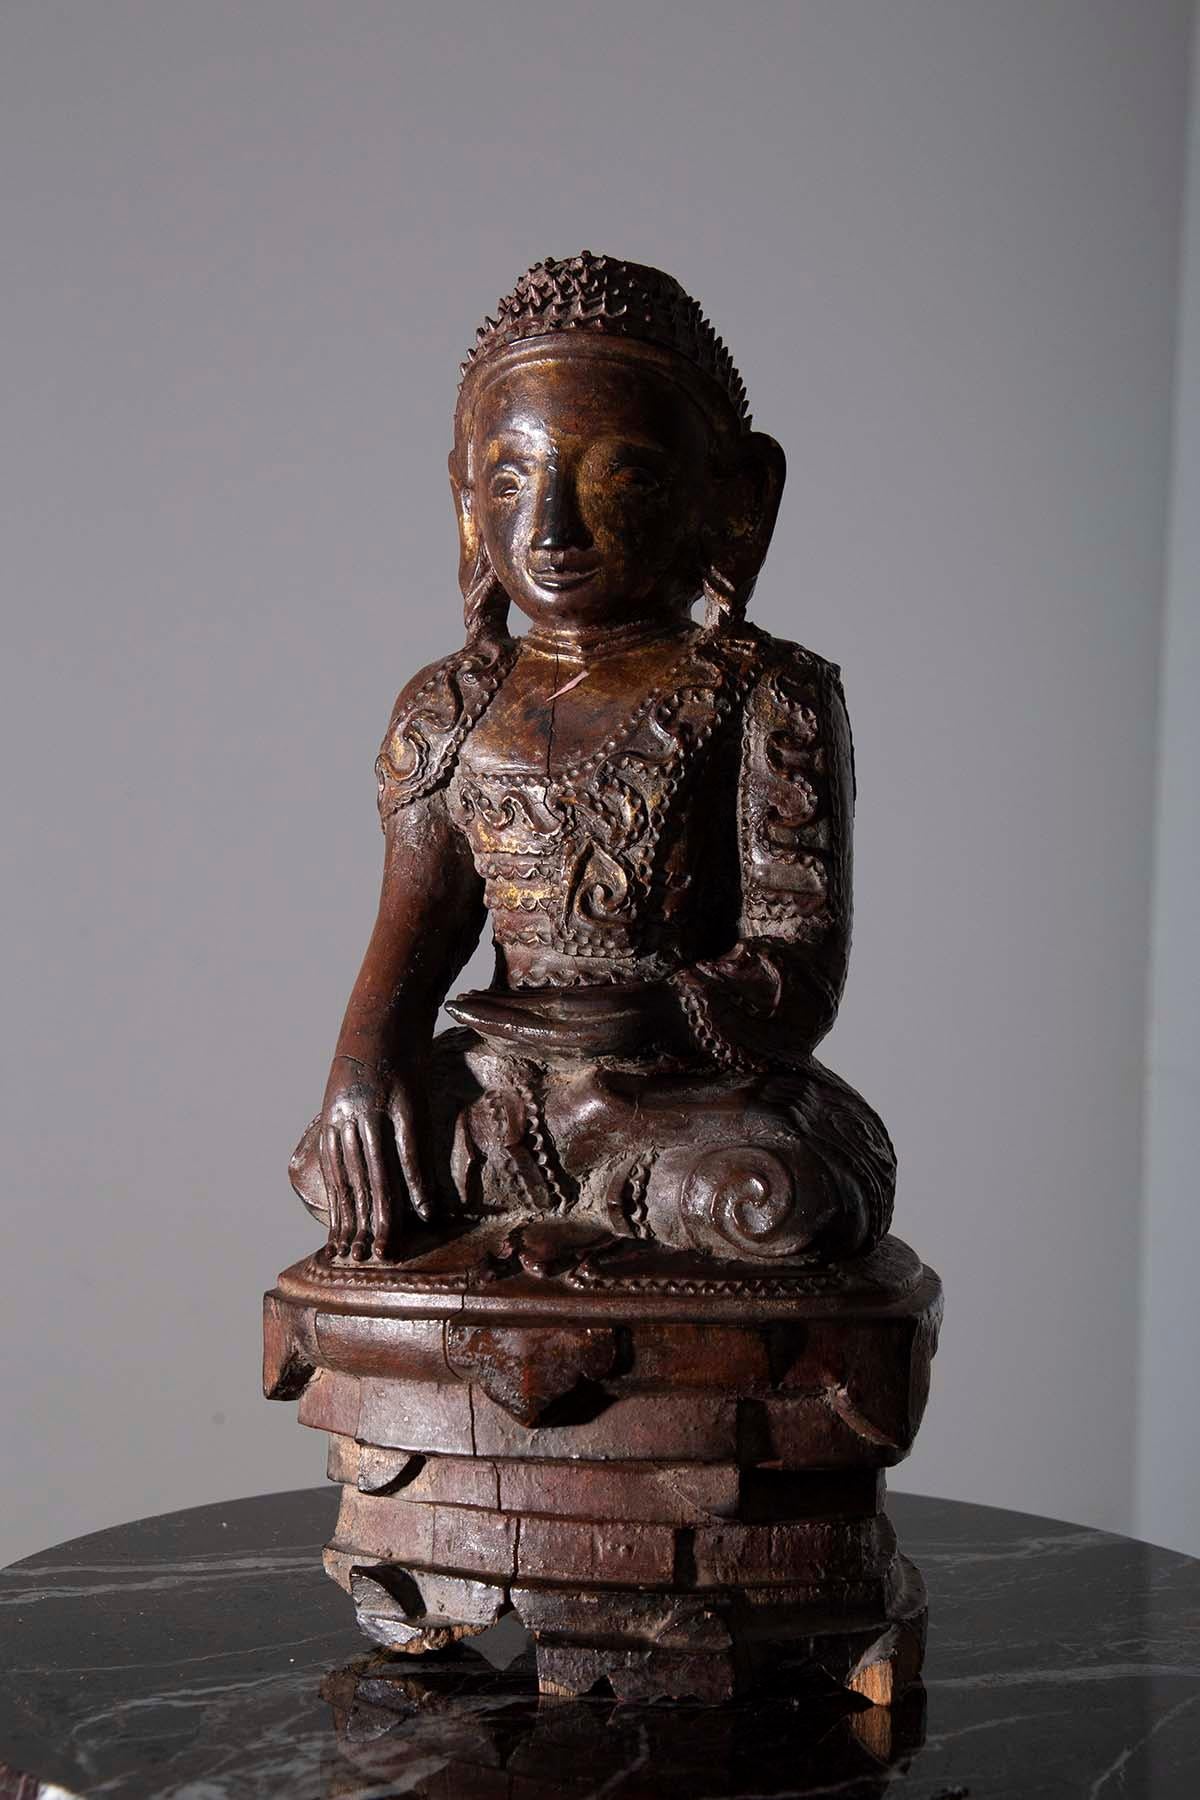 m Herzen Ihres heiligen Raums befindet sich ein zeitloses Meisterwerk - eine prächtige hölzerne Buddha-Skulptur, die die Geheimnisse der Zeitalter flüstert. Diese mit größter Hingabe gefertigte ätherische Kreation soll ihre Wurzeln in den mystischen